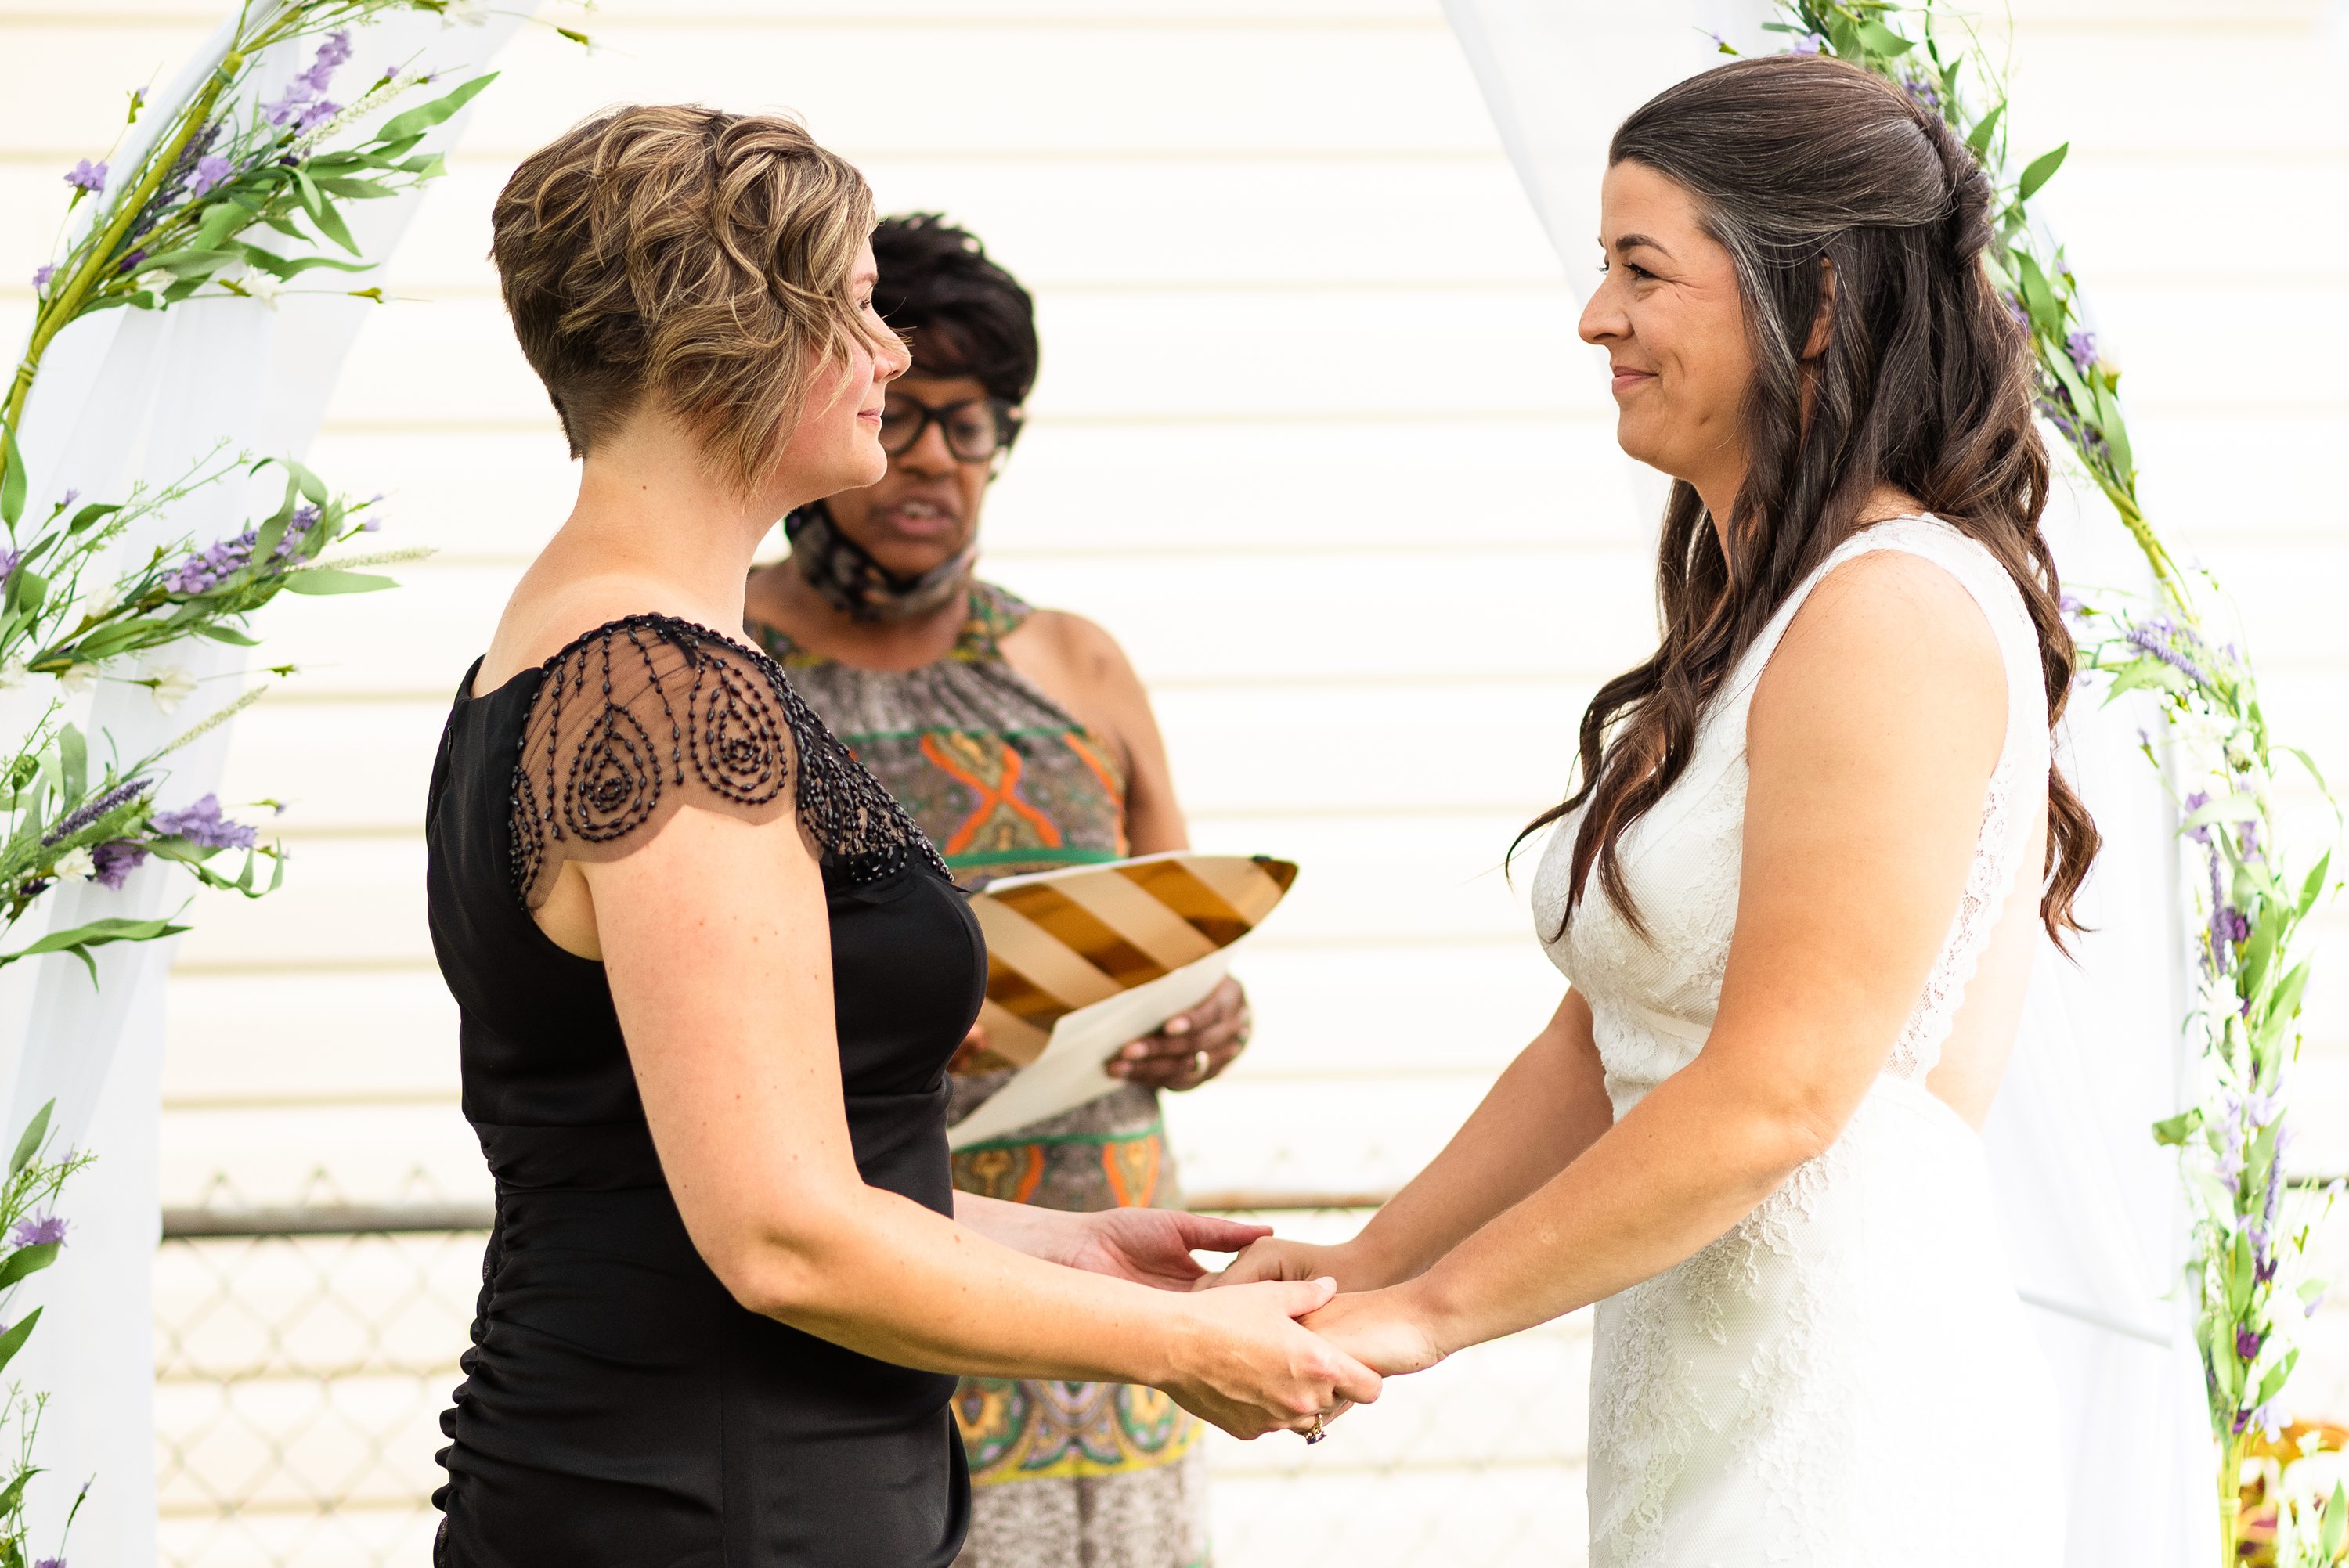  Northeast Ohio Weddings, wedding photography ideas